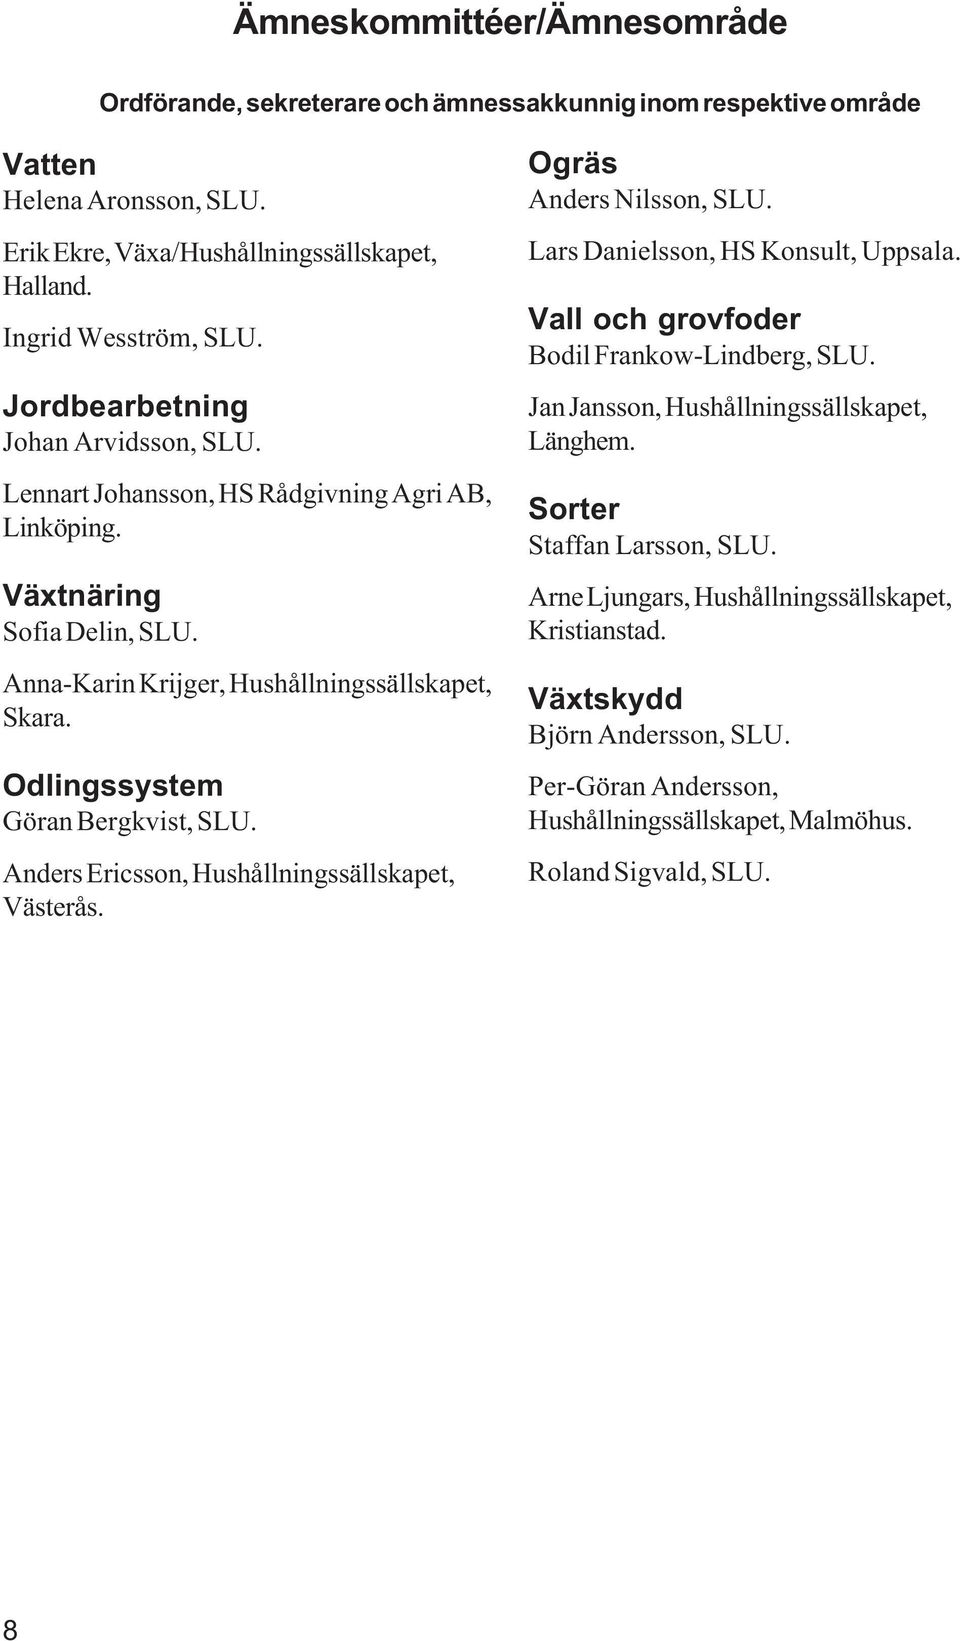 Odlingssystem Göran Bergkvist, SLU. Anders Ericsson, Hushållningssällskapet, Västerås. Ogräs Anders Nilsson, SLU. Lars Danielsson, HS Konsult, Uppsala. Vall och grovfoder Bodil Frankow-Lindberg, SLU.